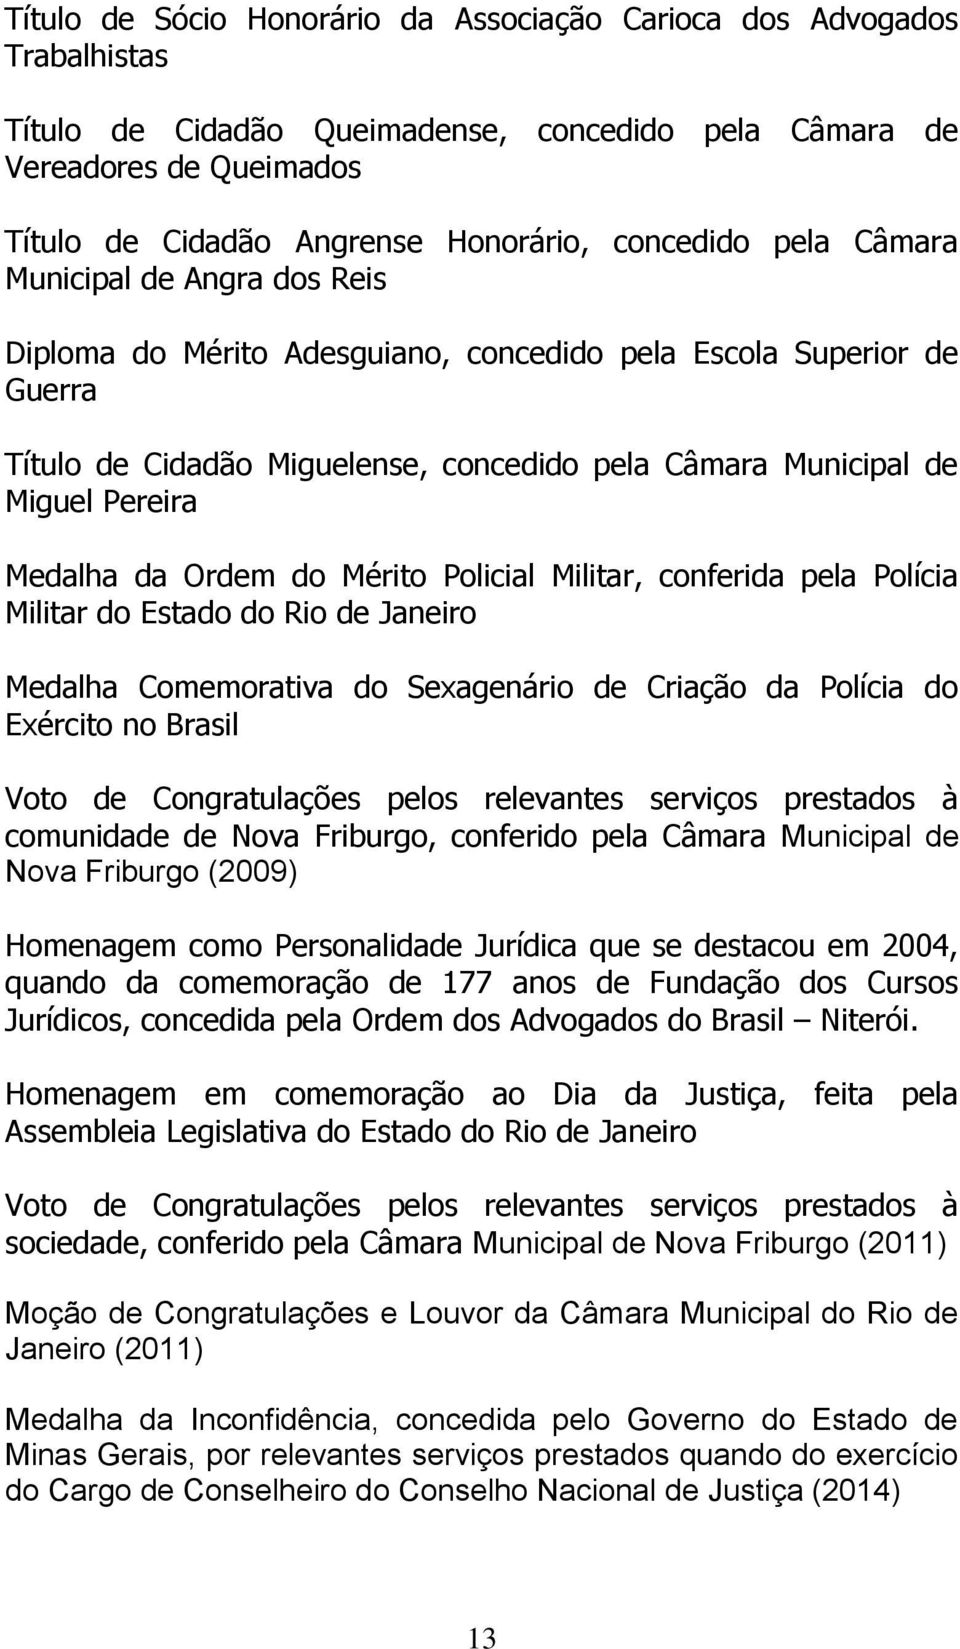 Pereira Medalha da Ordem do Mérito Policial Militar, conferida pela Polícia Militar do Estado do Rio de Janeiro Medalha Comemorativa do Sexagenário de Criação da Polícia do Exército no Brasil Voto de